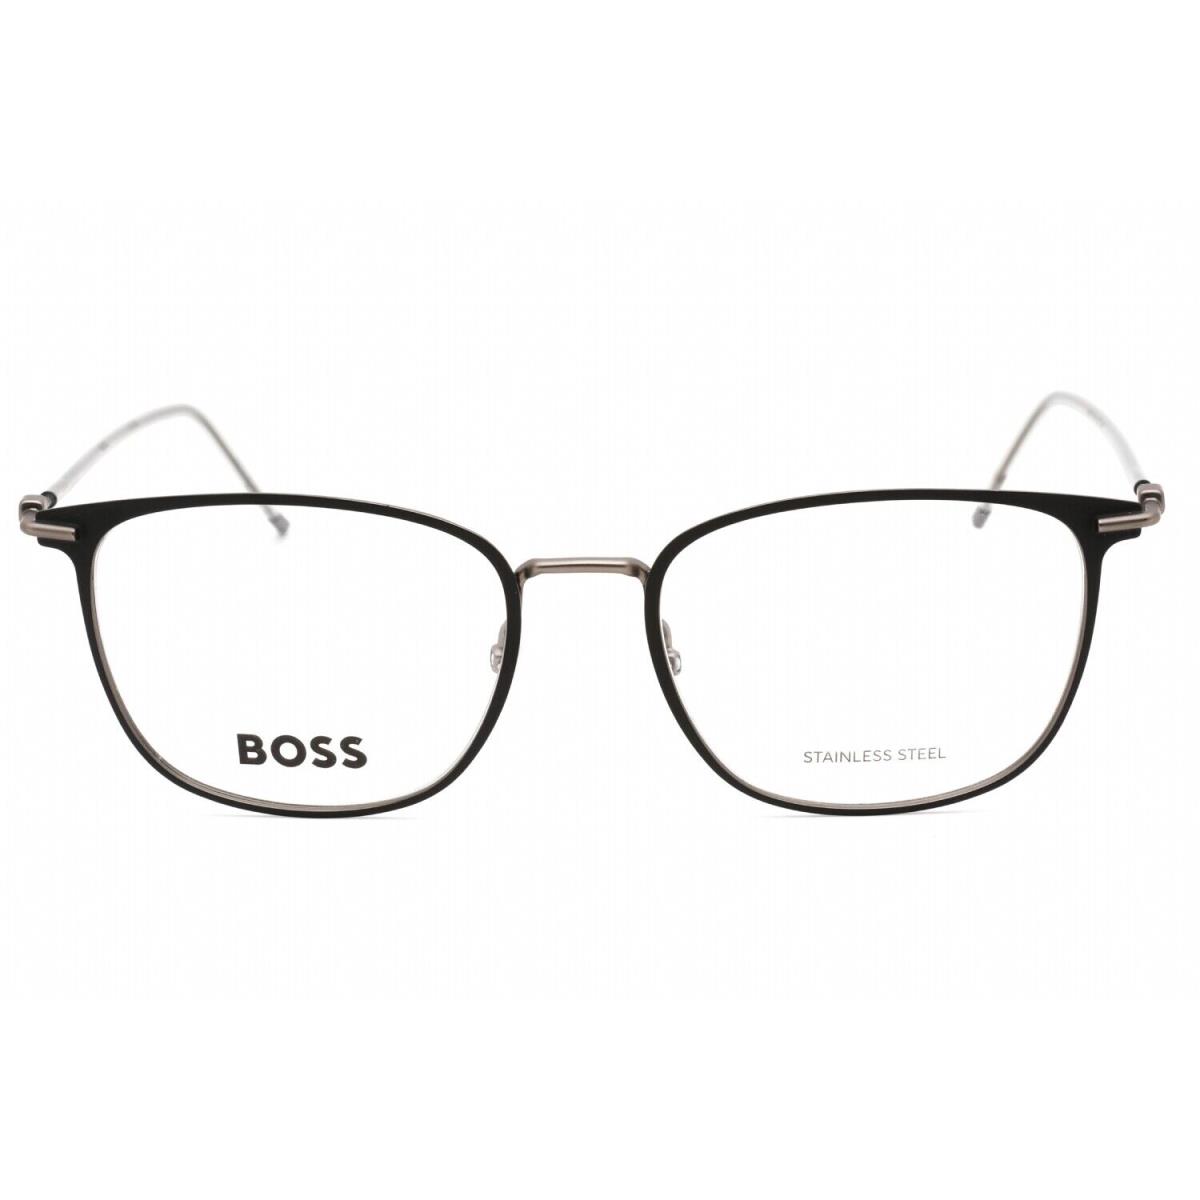 Hugo Boss Boss 1431 0RZZ 00 Eyeglasses Mtbkdkrt Frame 54 Mm - Frame: Black Ruthenium